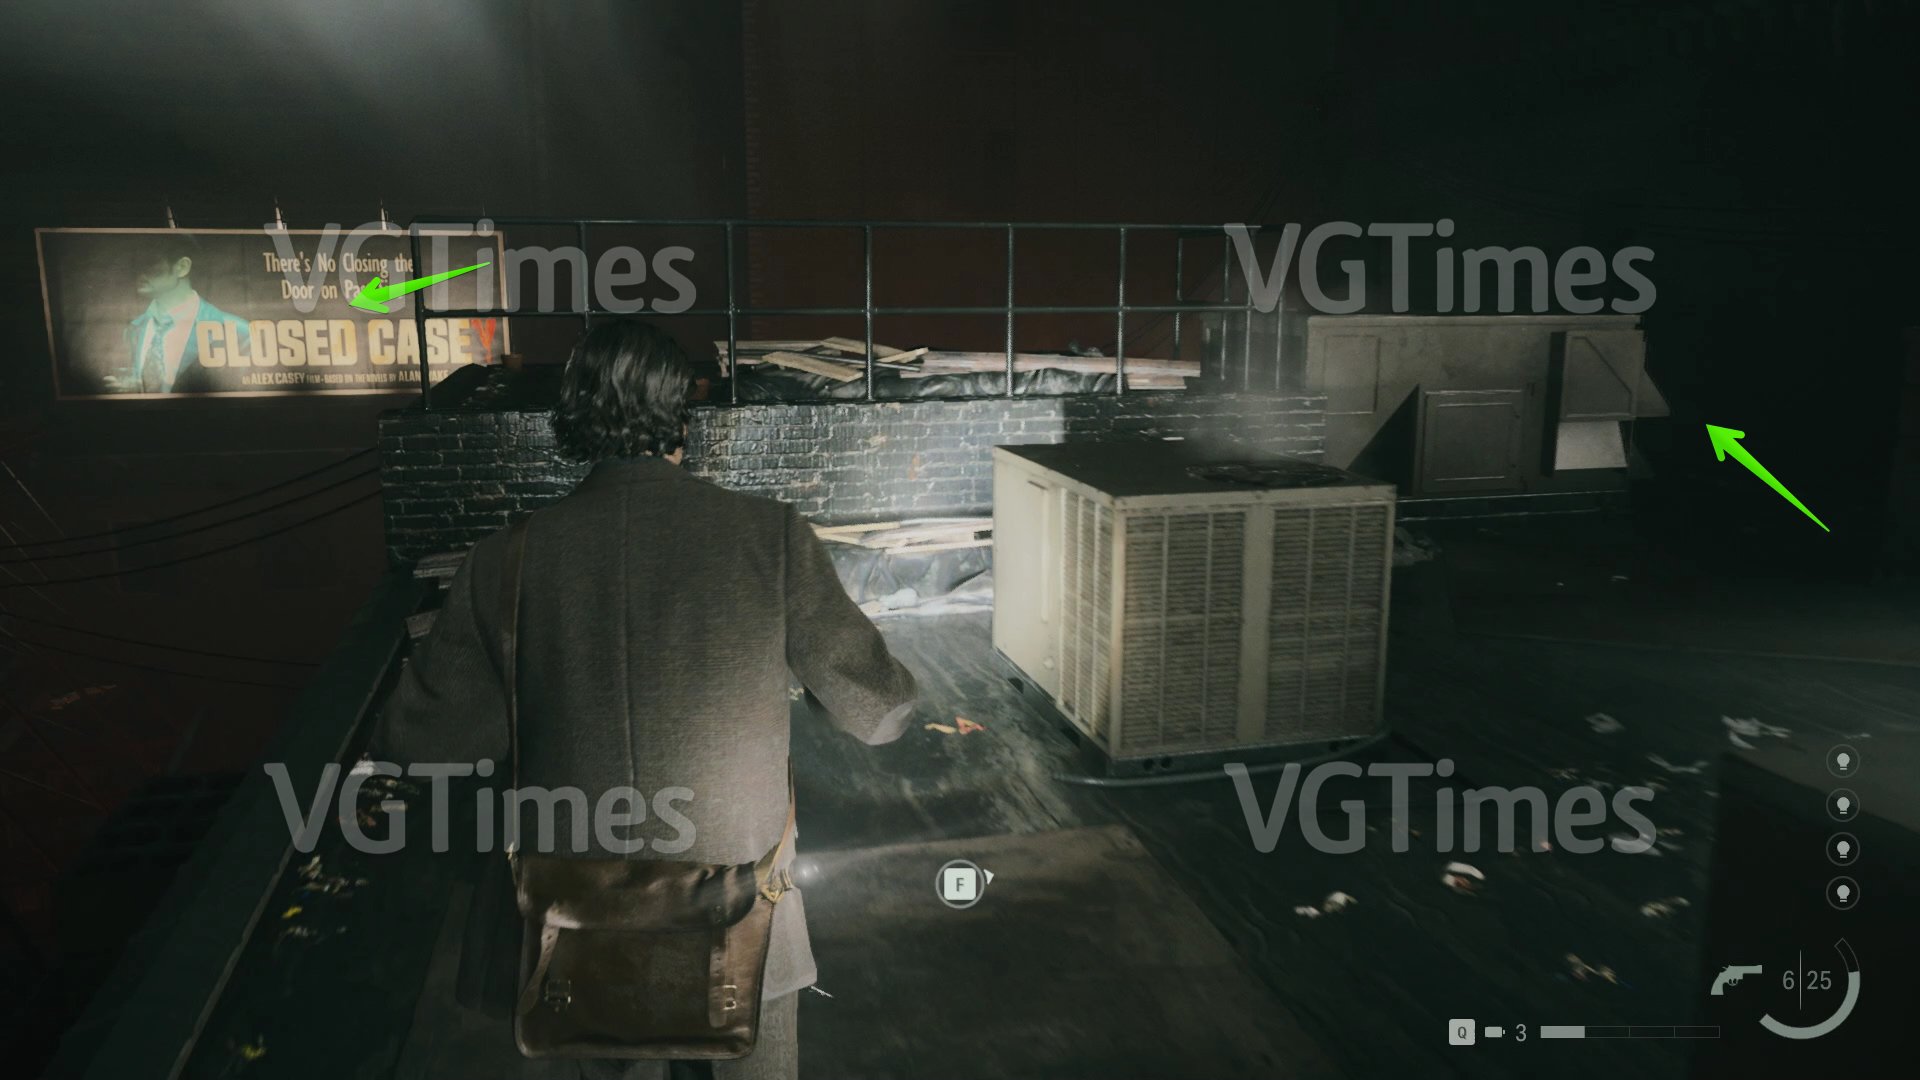 
          Прохождение Alan Wake 2 — все улики, страницы, тайники, оружие и ланч-боксы
        